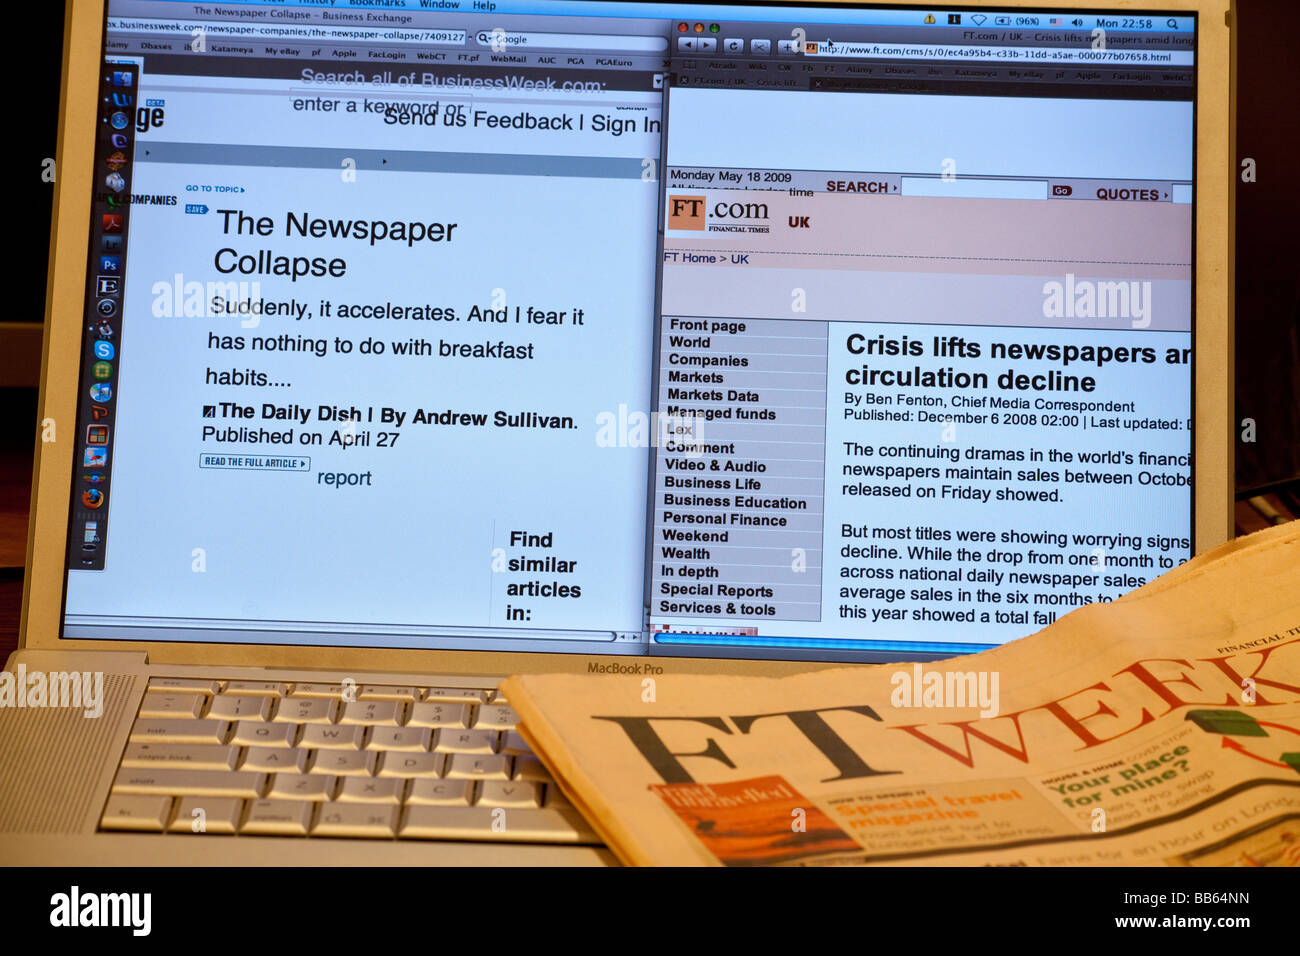 Computer con gli articoli online sulla scomparsa dei quotidiani illustrato con una copia del Financial Times Foto Stock